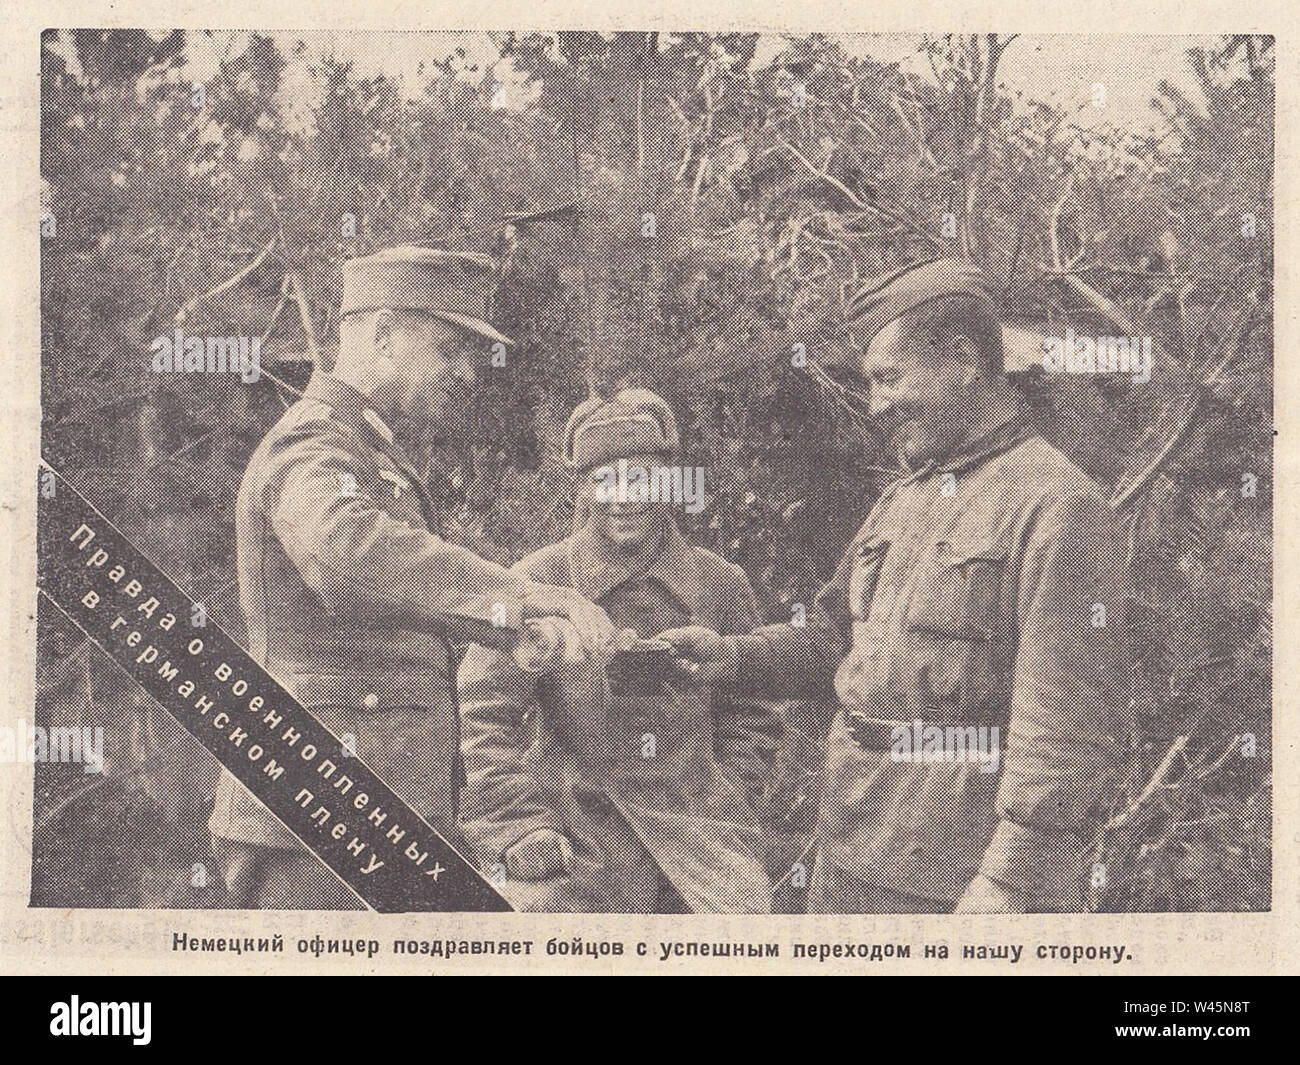 Deutscher Offizier gratuliert der Sowjetischen Kämpfer mit einem erfolgreichen Übergang zu Ihrer Seite. Die Wahrheit über Kriegsgefangene in deutscher Gefangenschaft. Foto aus der Zeitung von den 1940er Jahren. Stockfoto